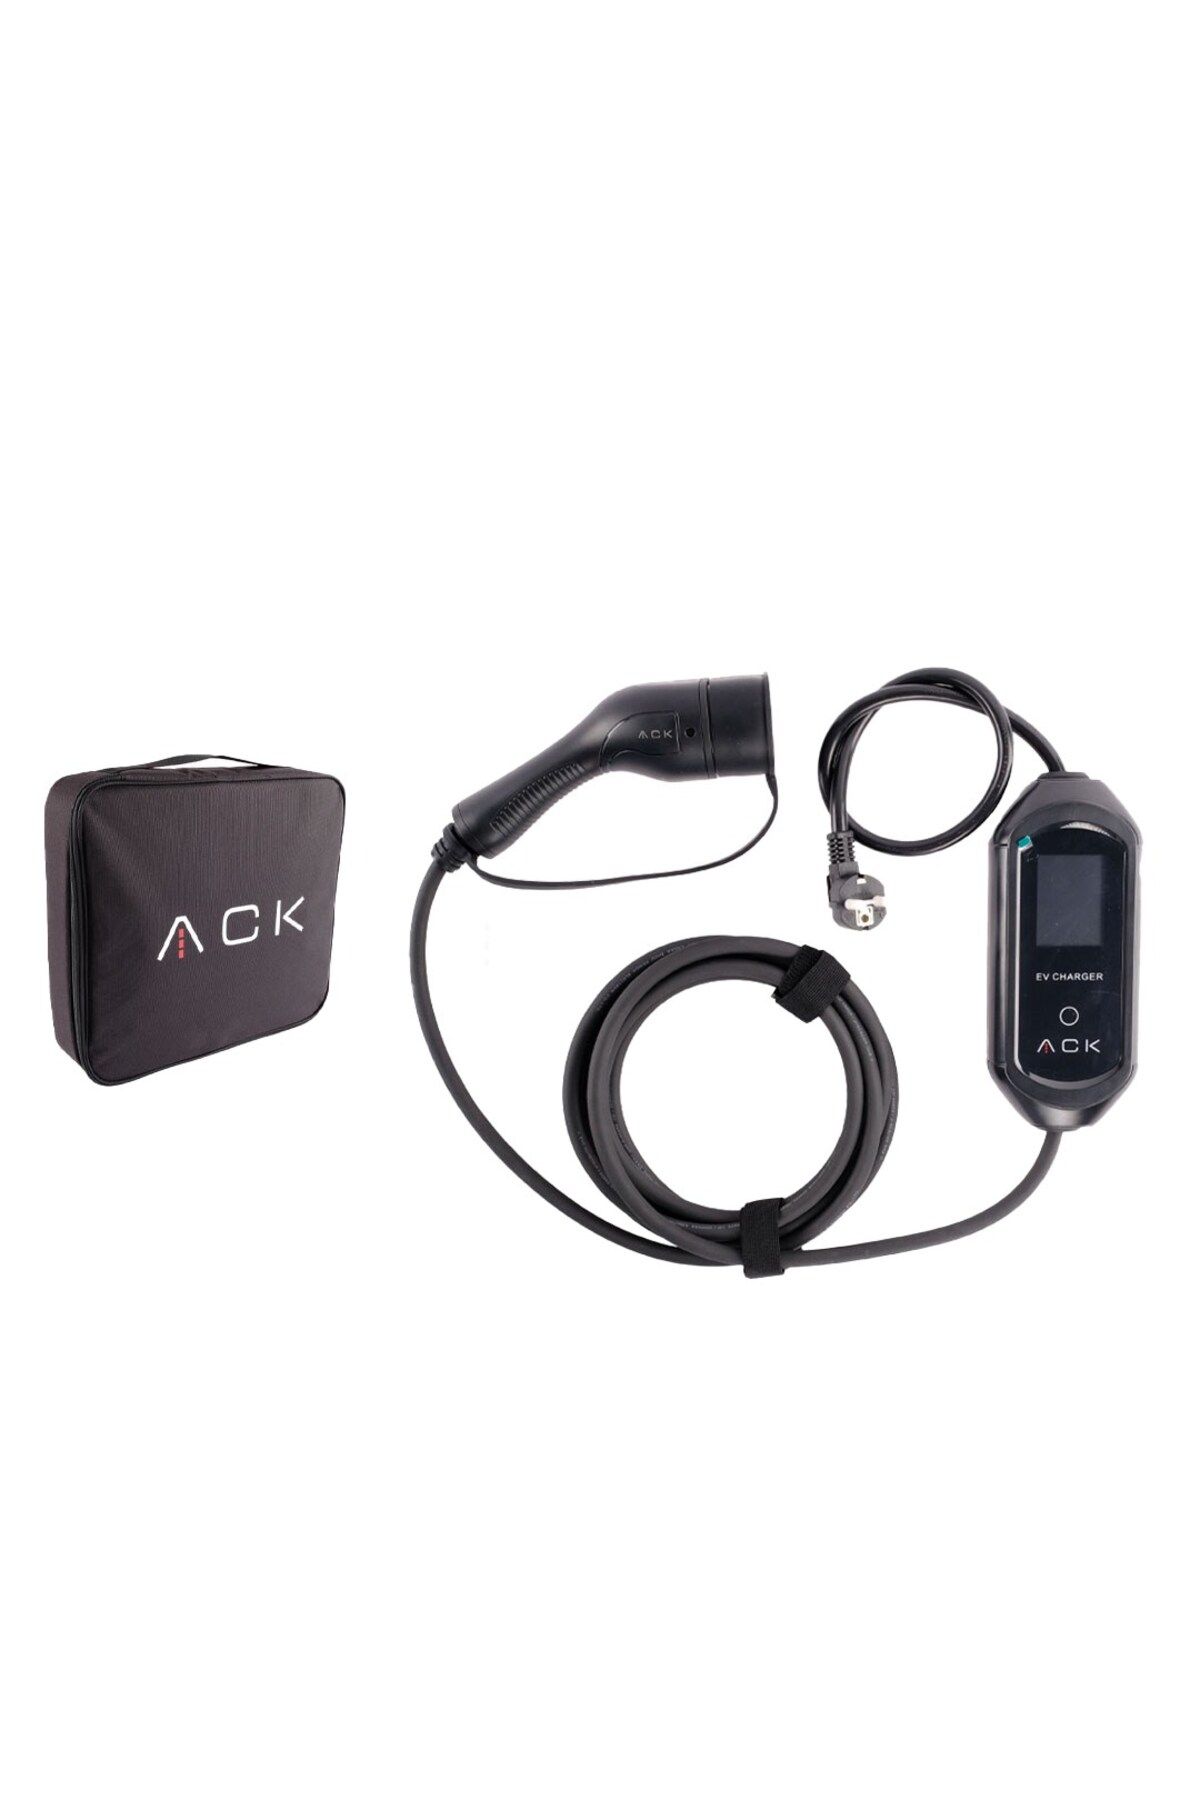 Ack Taşınabilir Elektrikli Araç Şarj Cihazı 16A 3,5 kW AE01-02021Uyumlu